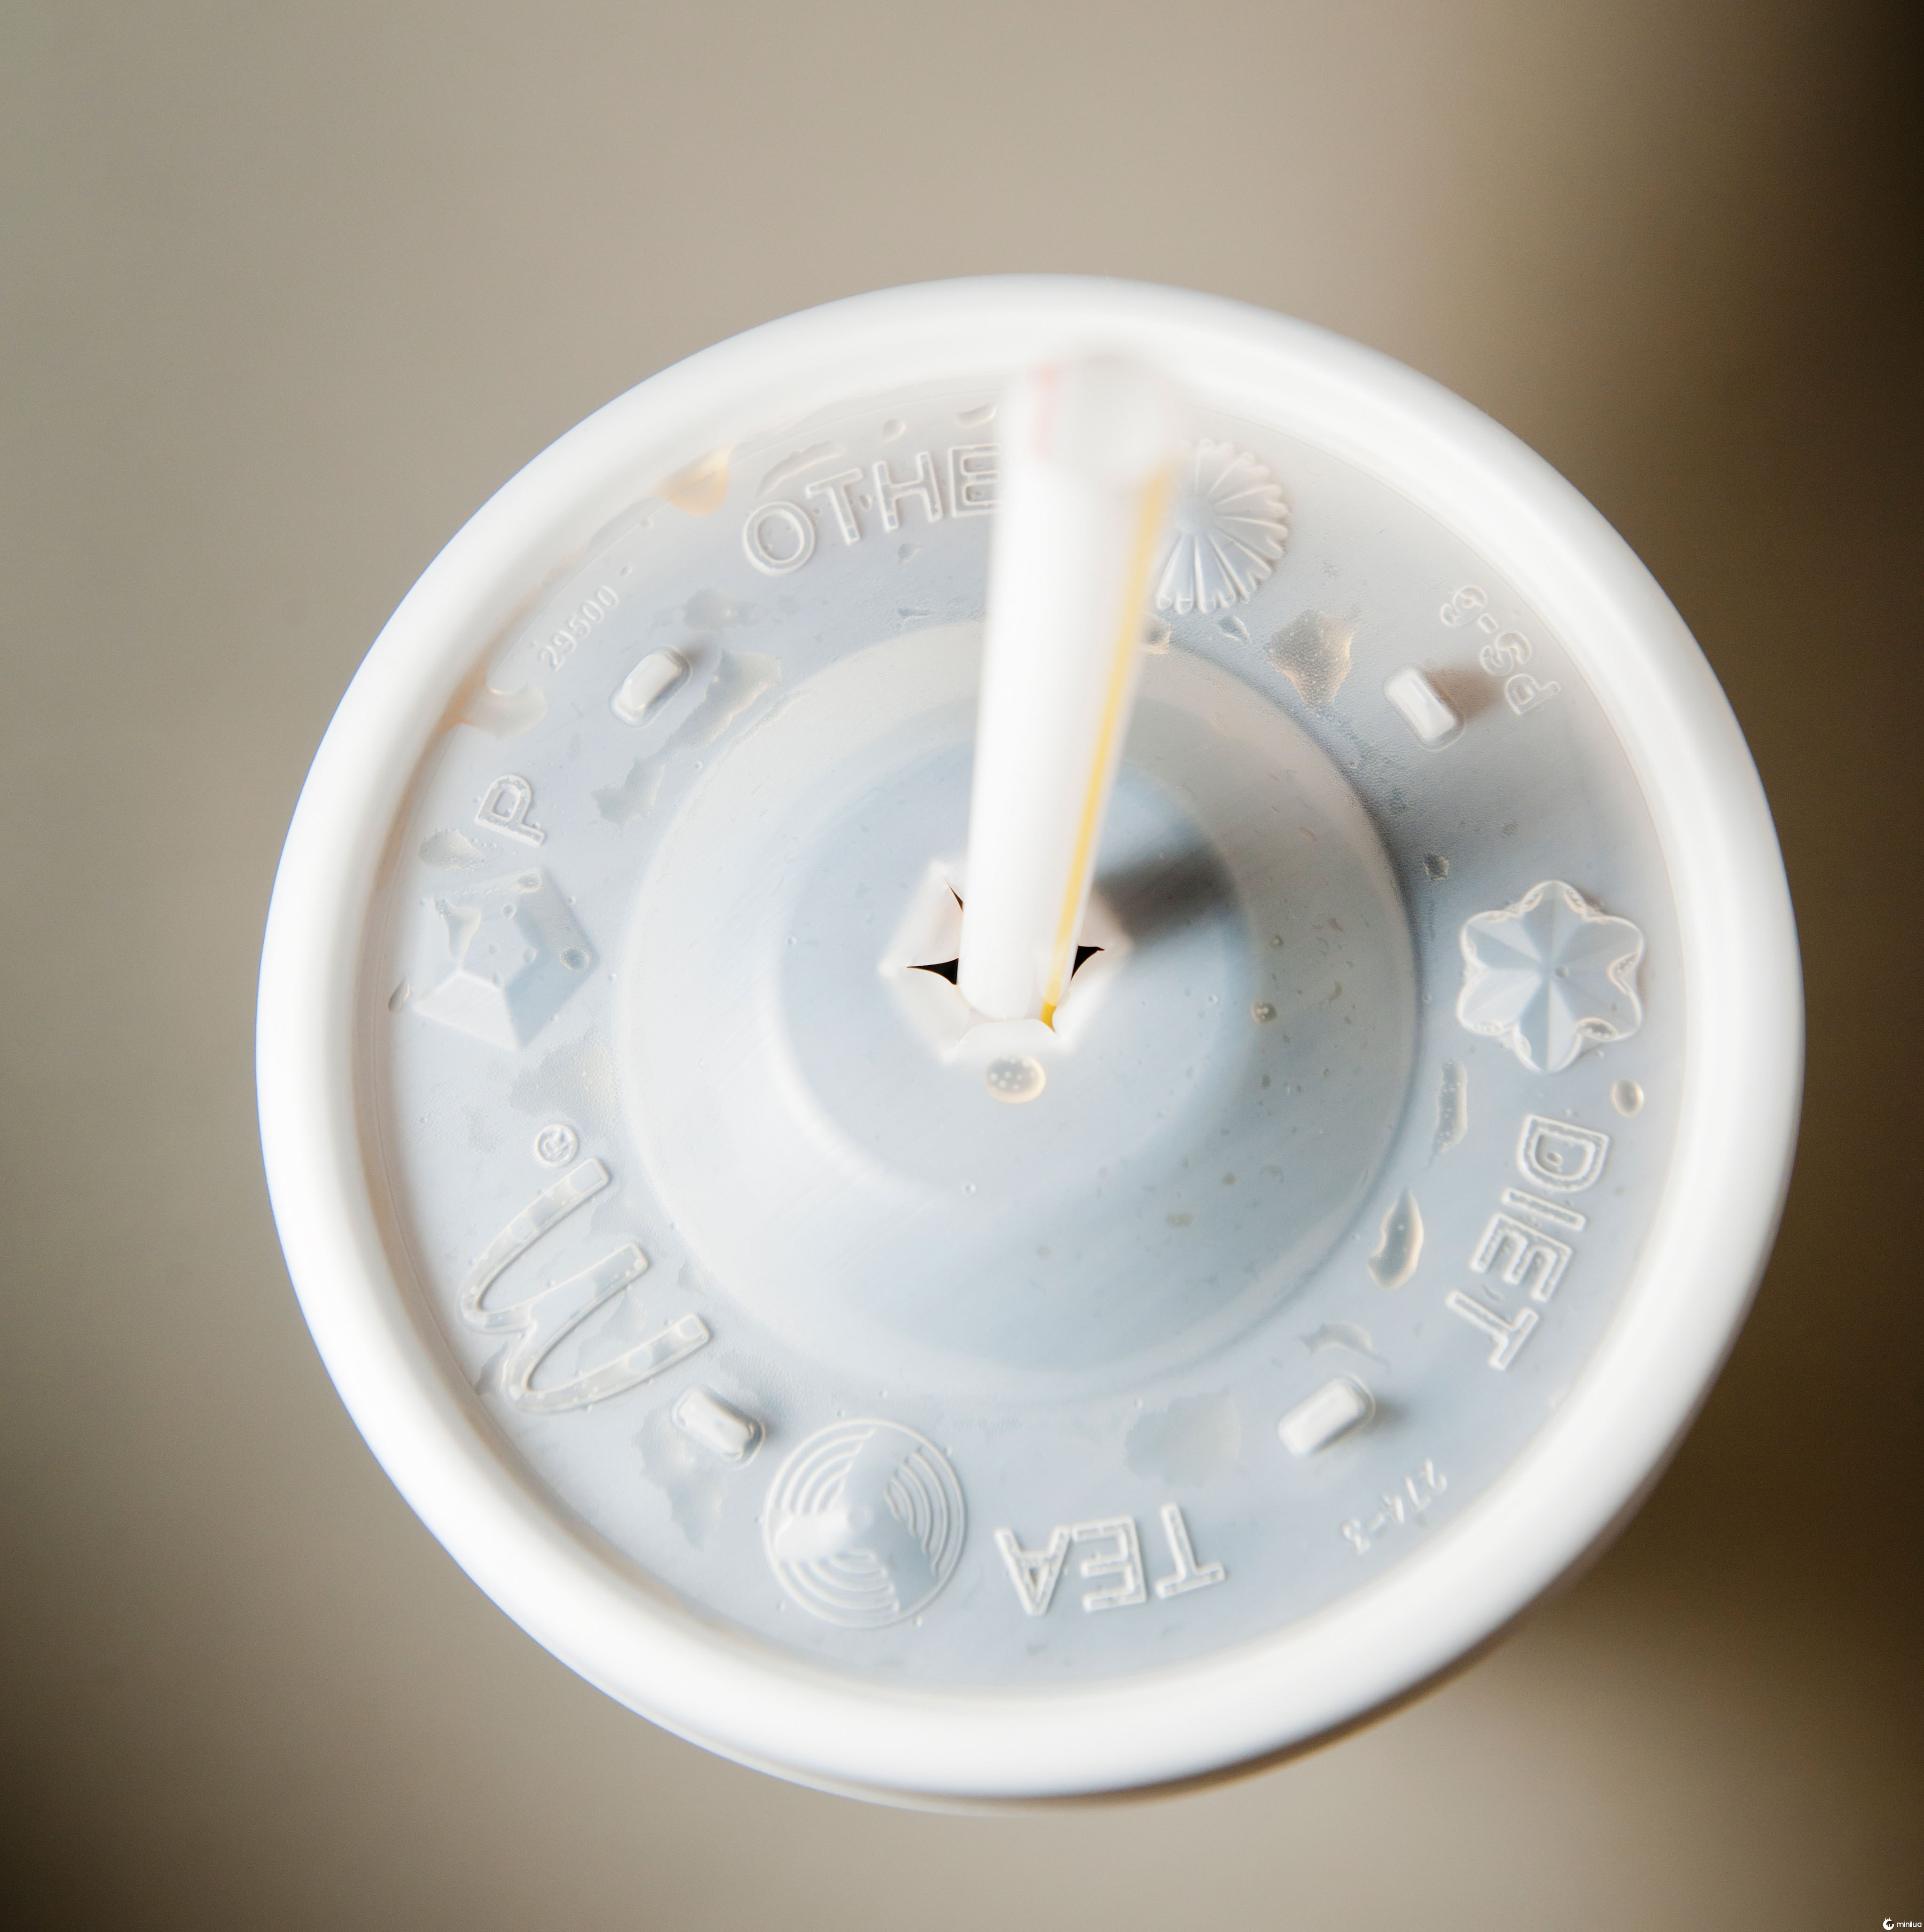 Os funcionários do McDonald's compartilham o que os 'botões' nas tampas de suas bebidas realmente significam